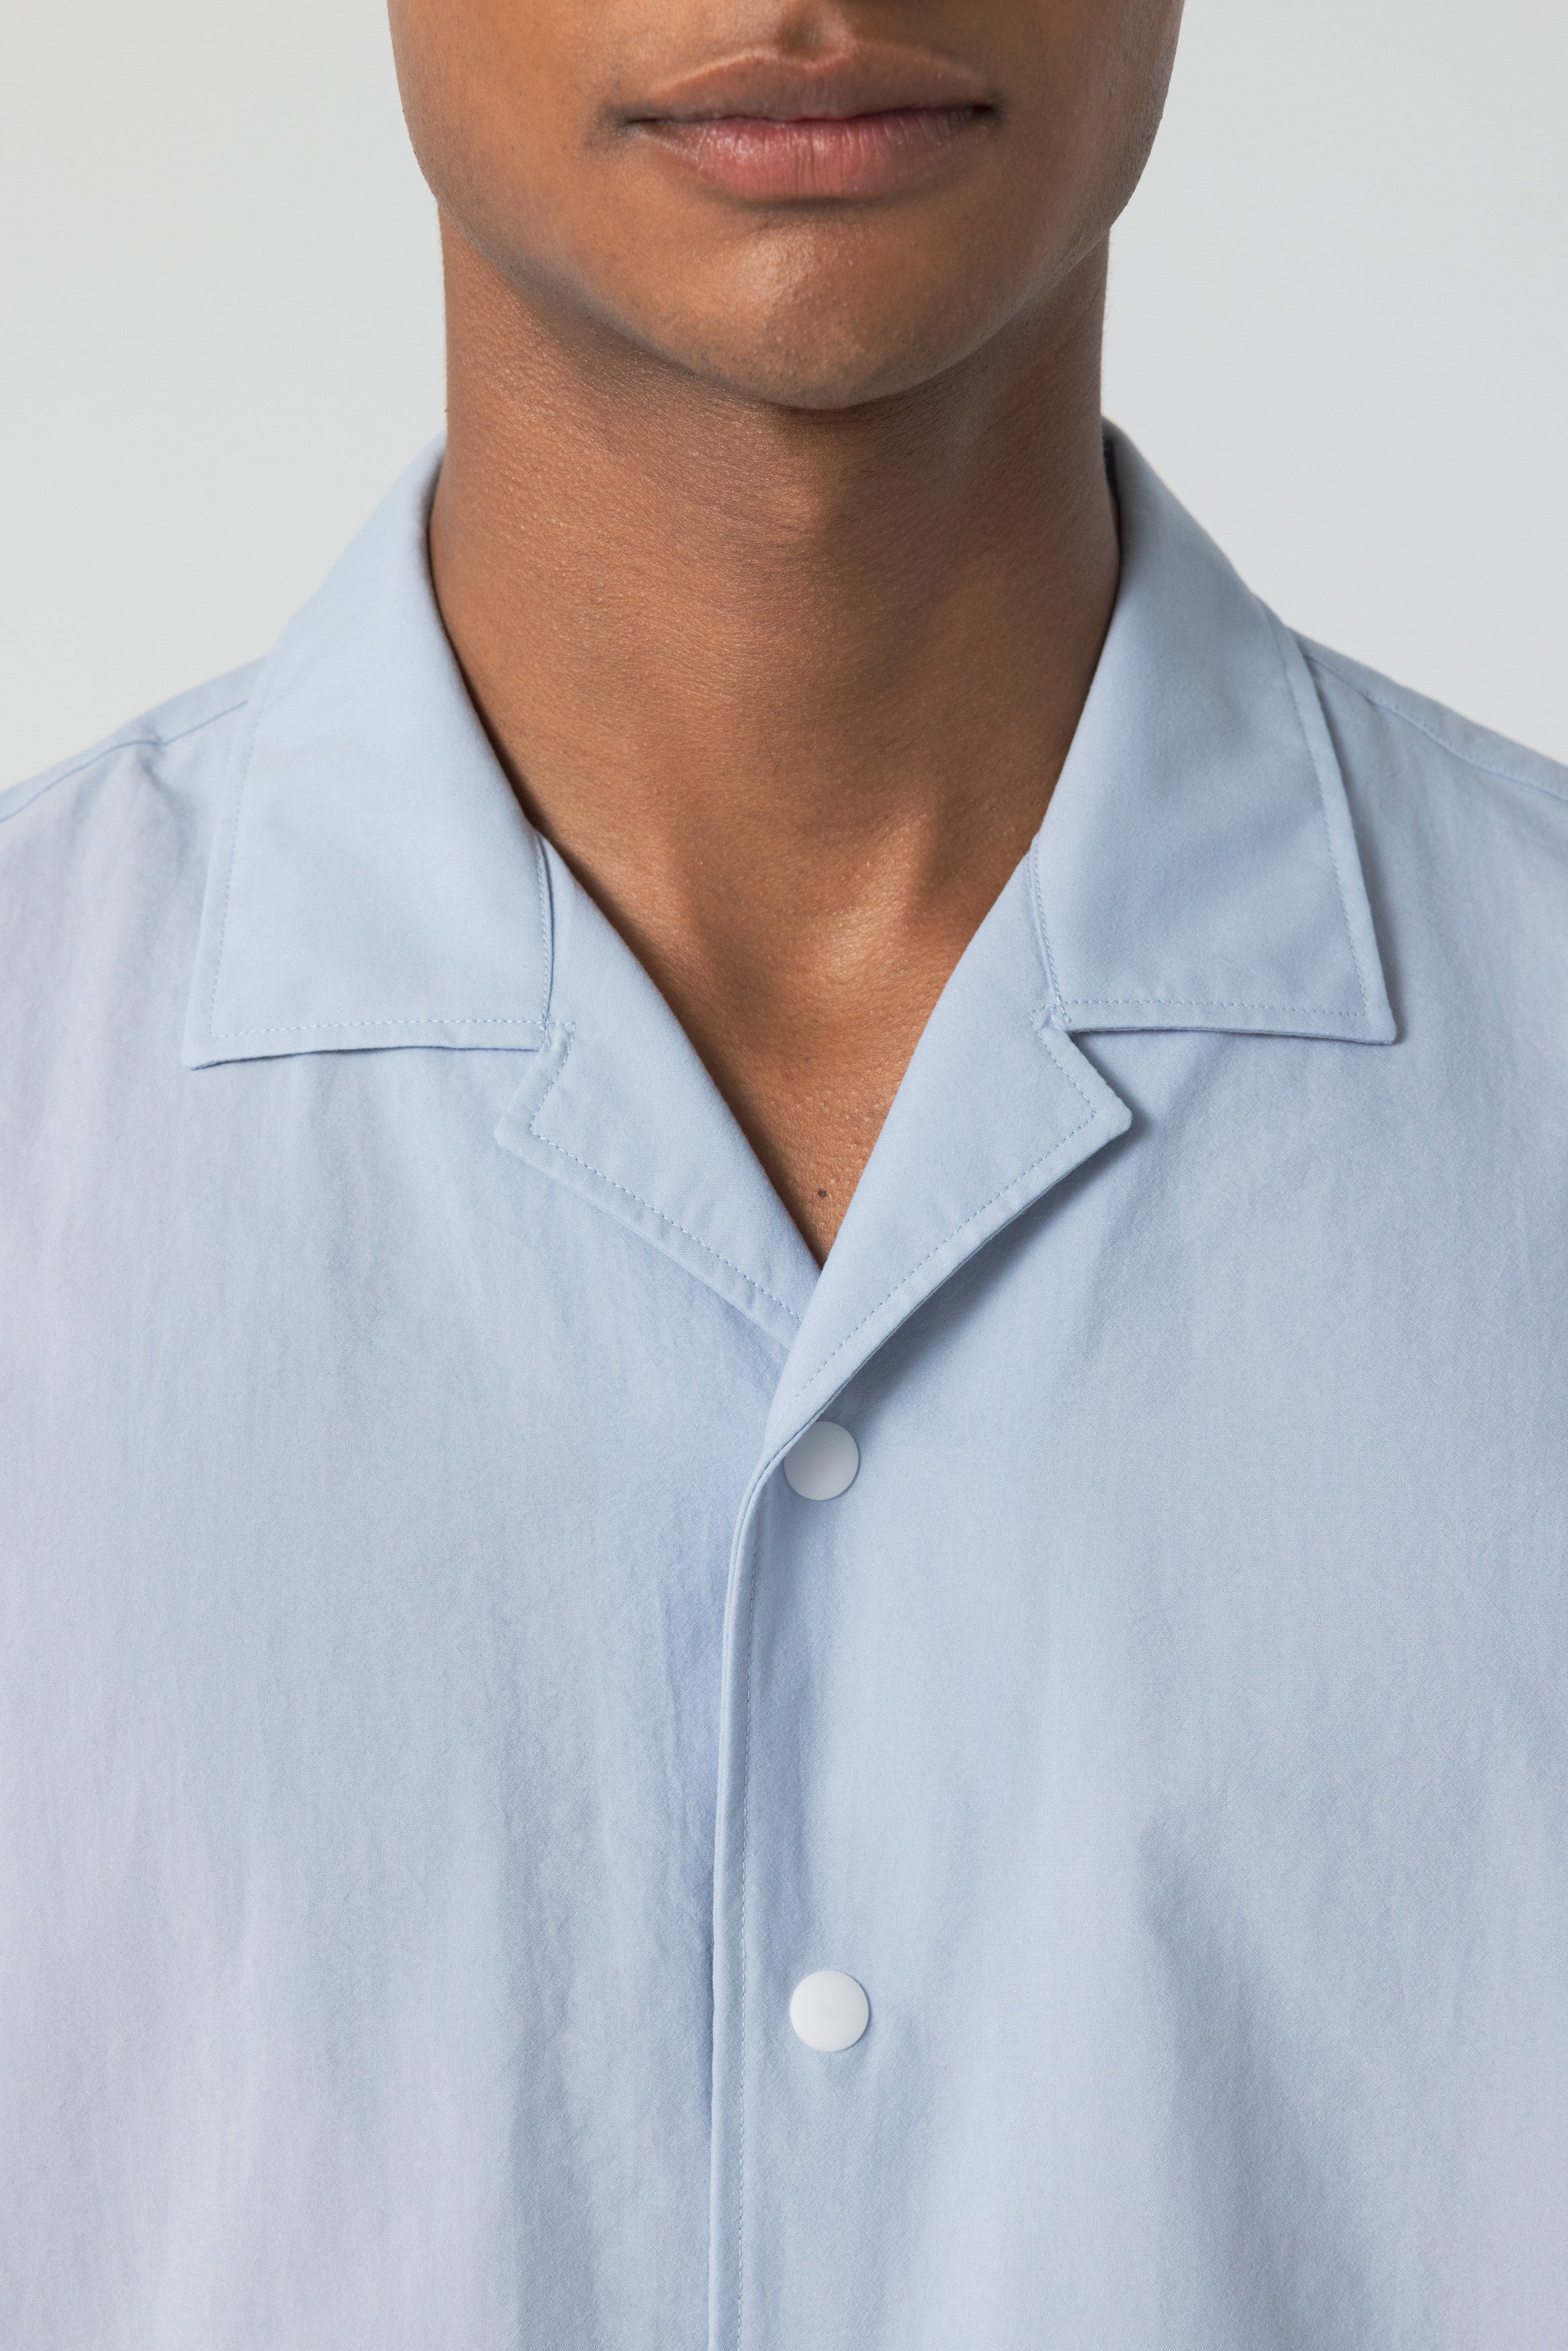 Officine Générale Men's Eren Seersucker Bandana Short Sleeve Shirt -  Navy/White